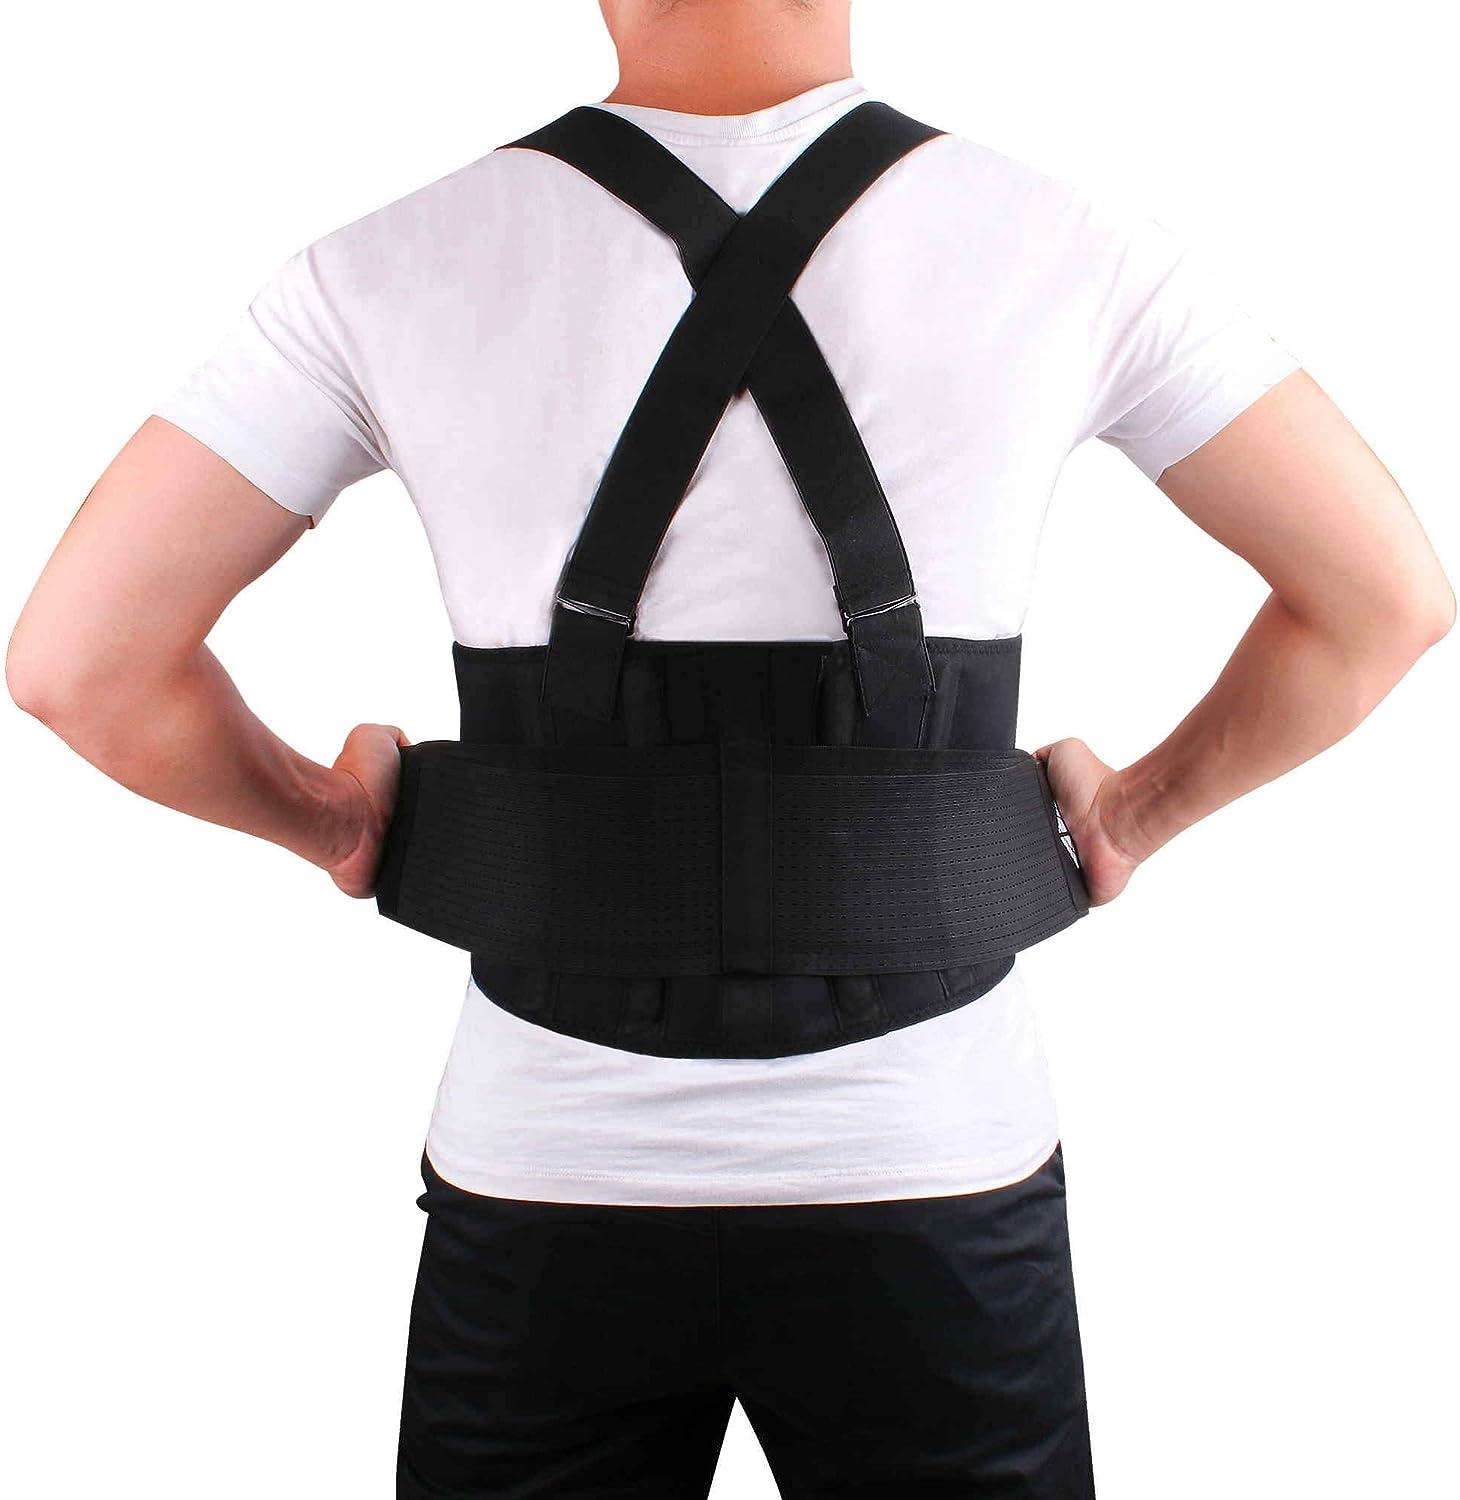 Faja Hombre Medica Lumbar Espalda Men's Tank Top Low Back Disc Posture Brace